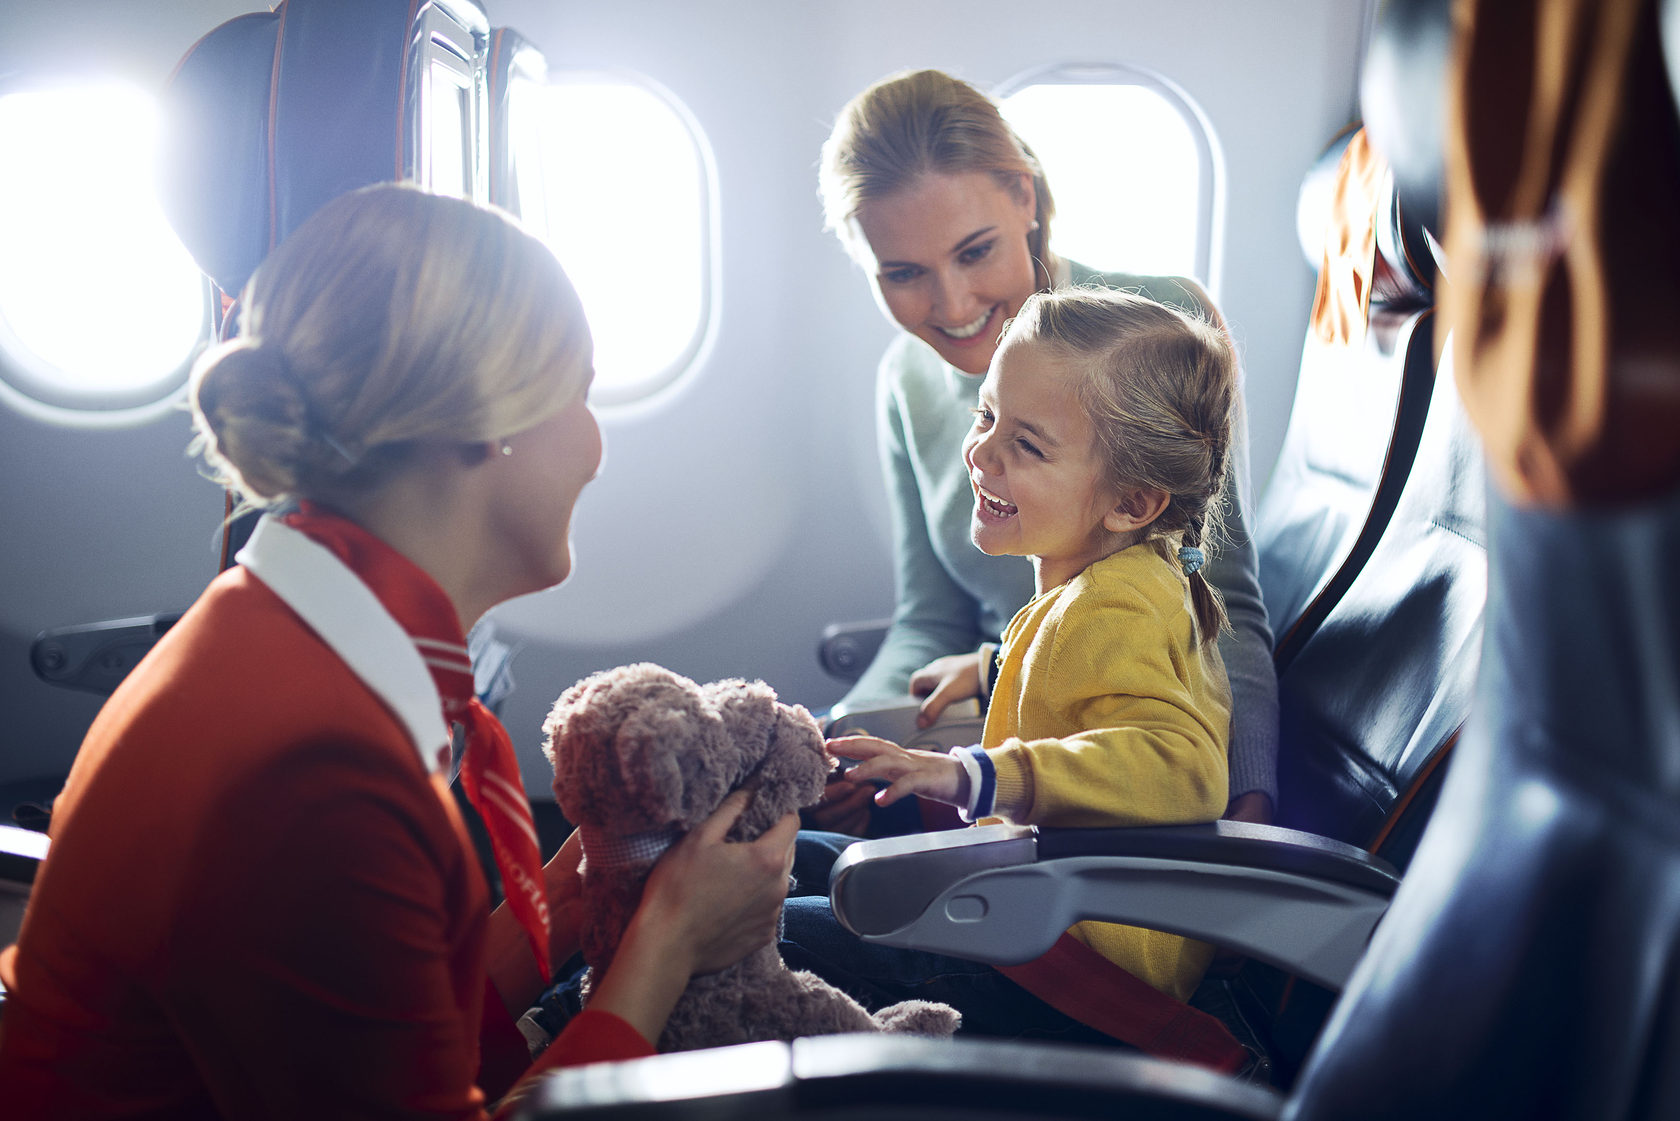 Позваной пассажир. Ребенок пассажир. Самолет для детей. Пассажиры с детьми в самолете. Самолет с пассажиром.